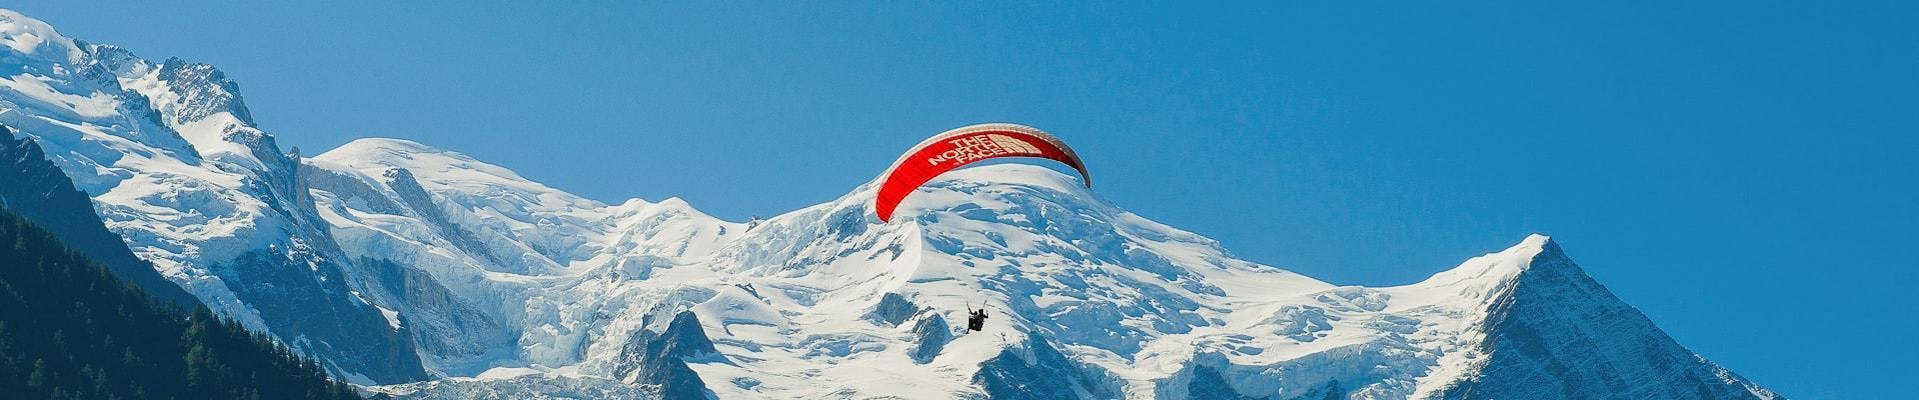 Un pilote de parapente de Kailash Parapente vole au-dessus des montagnes pendant un Vol Parapente Biplace depuis Planpraz - Chamonix.